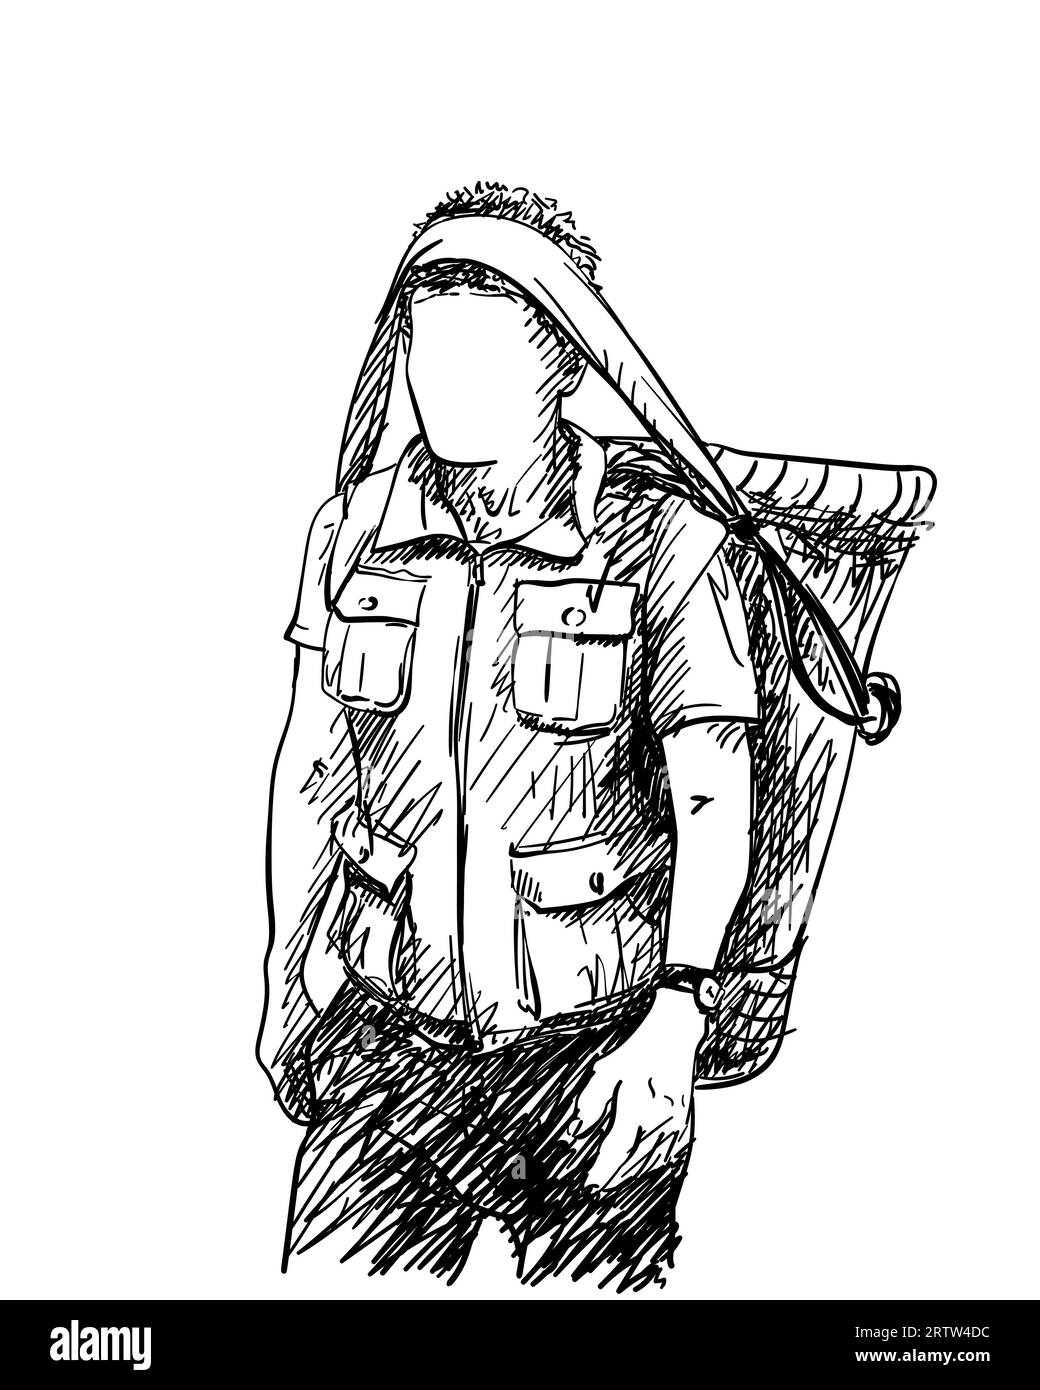 Porteur népalais portant un panier sur la tête de manière traditionnelle et portant un gilet d'expédition avec de nombreuses poches, Homme sans visage, Vector croquis dessiné à la main malade Illustration de Vecteur